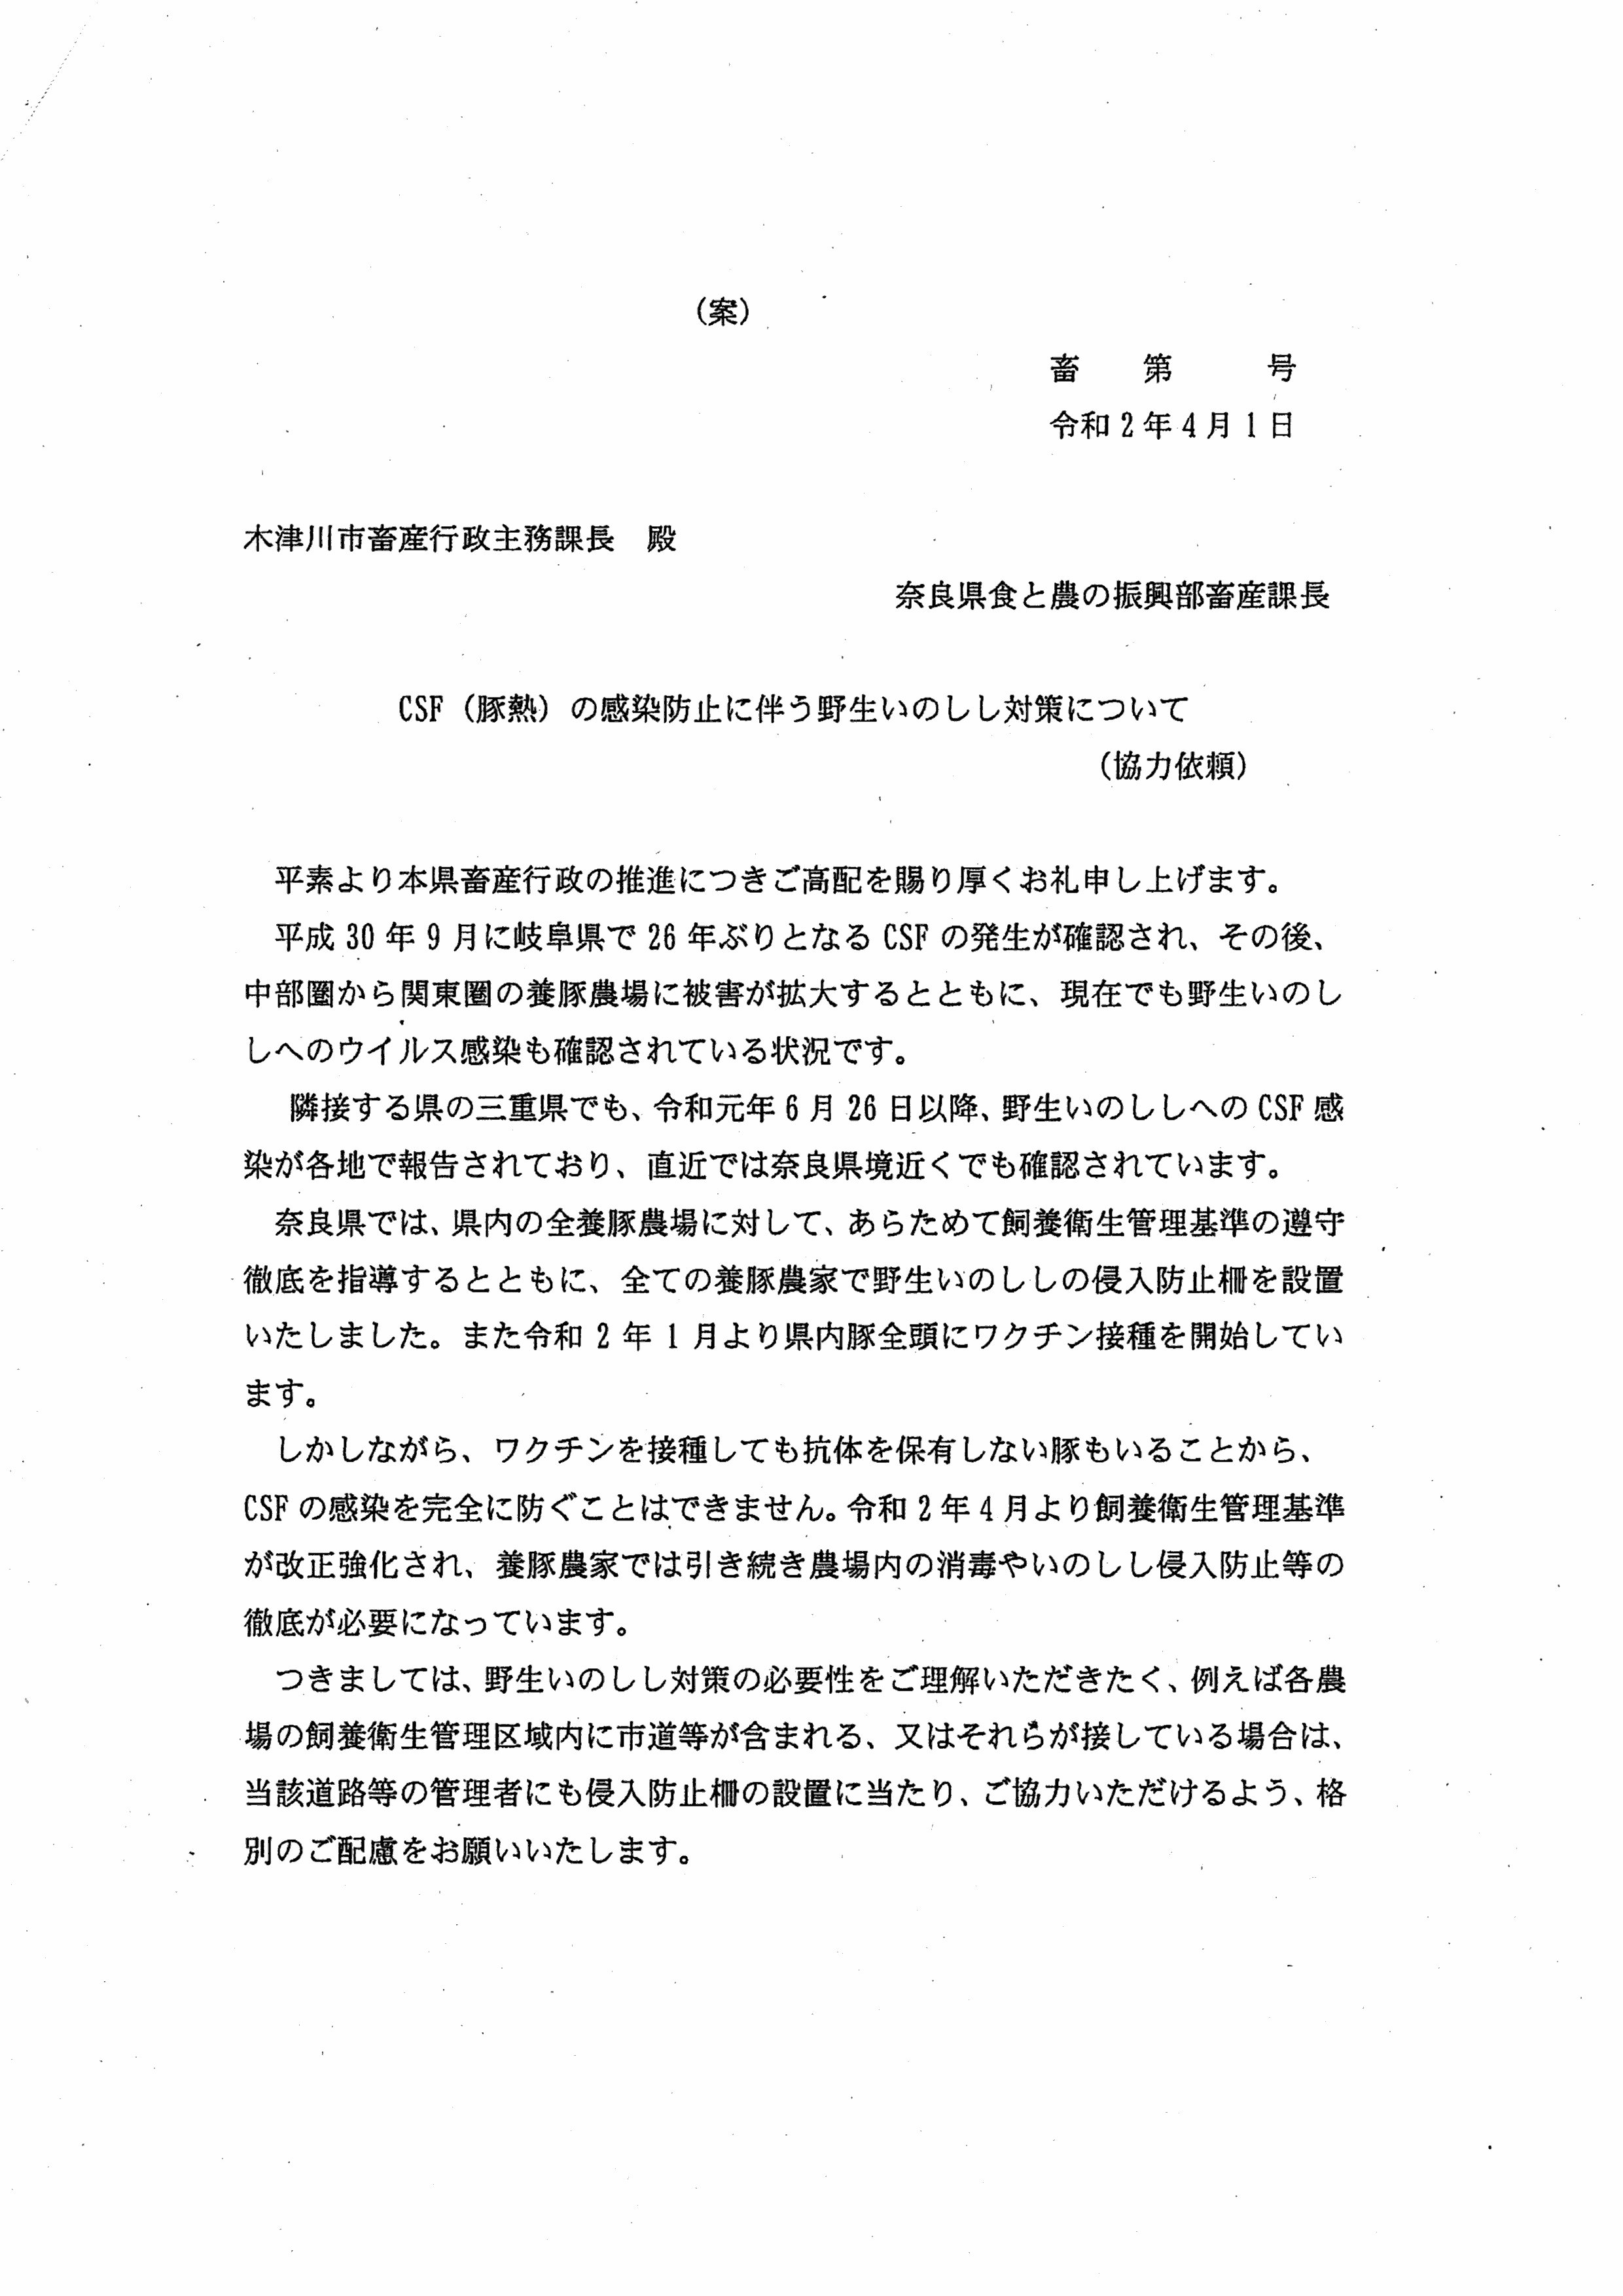 令和2年4月14日-村田養豚場の防護柵に係る奈良県との協議に関する報告書-04-奈良県の協力依頼書